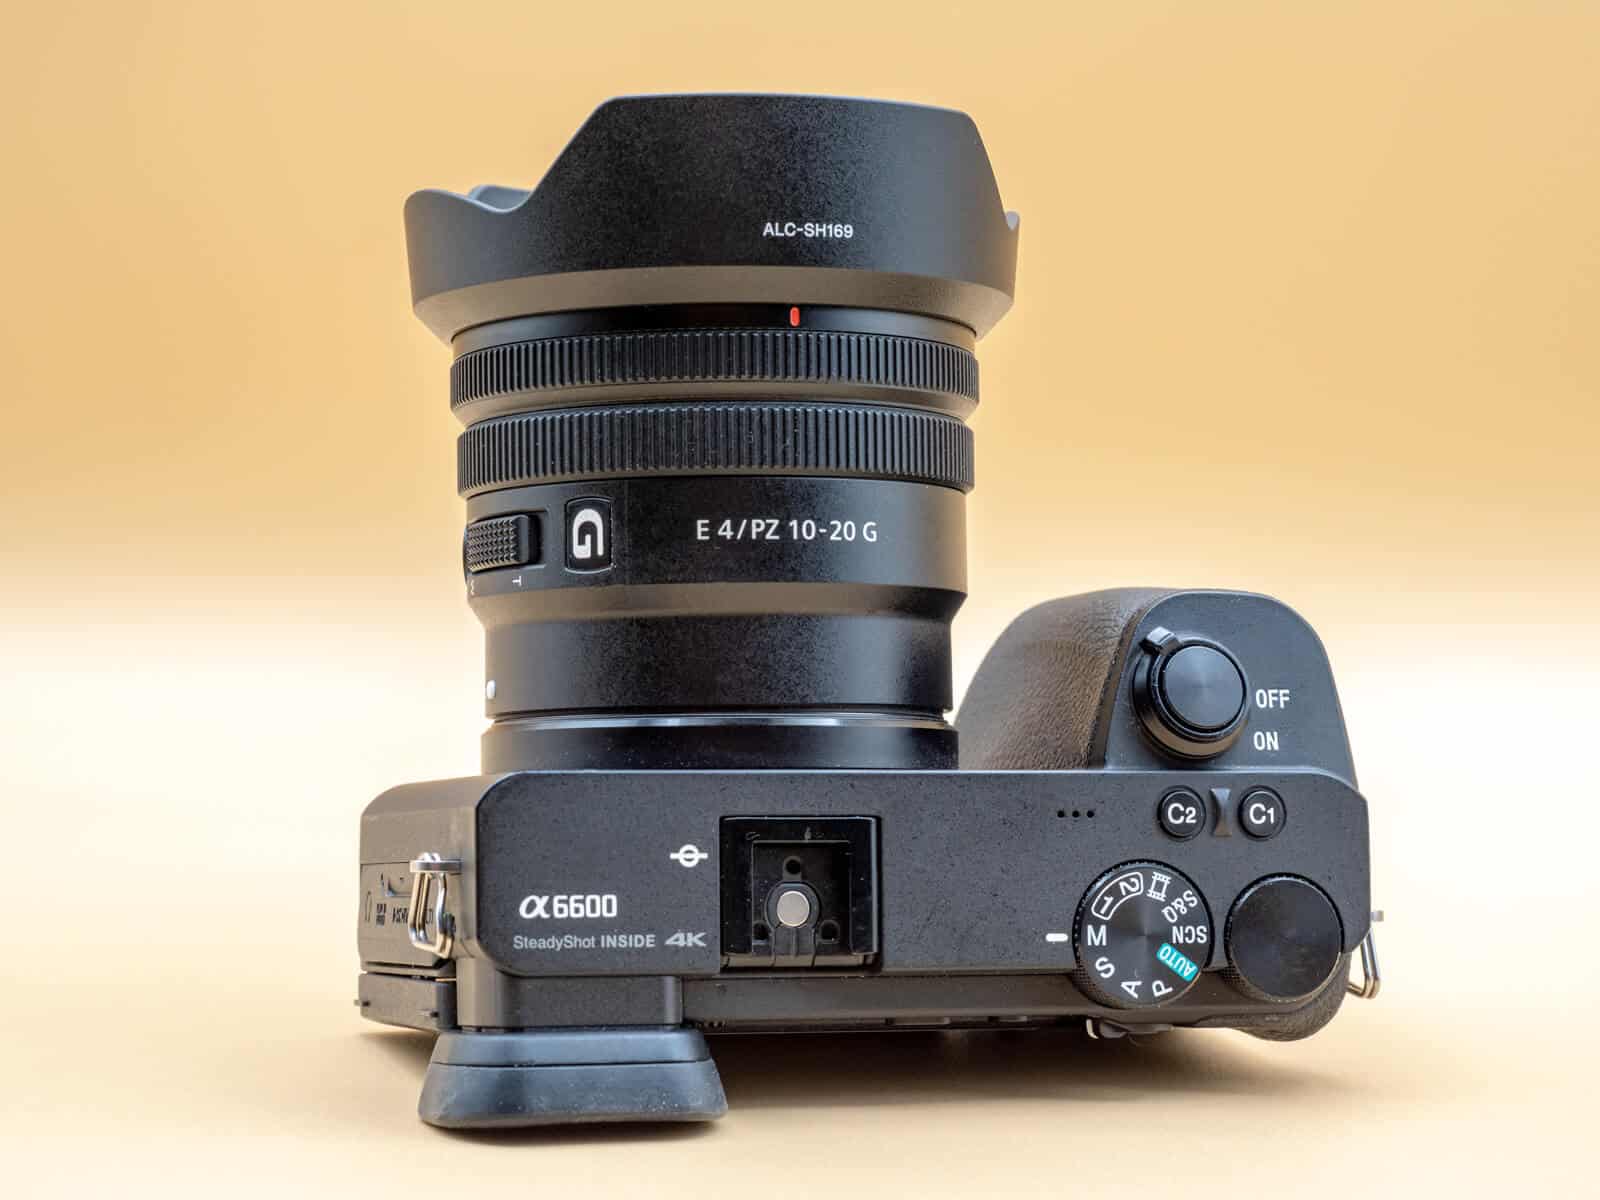 Sony ra mắt ống kính 10-20mm F4 PZ G, ống kính zoom nhỏ gọn cho các máy ảnh APS-C ngàm E